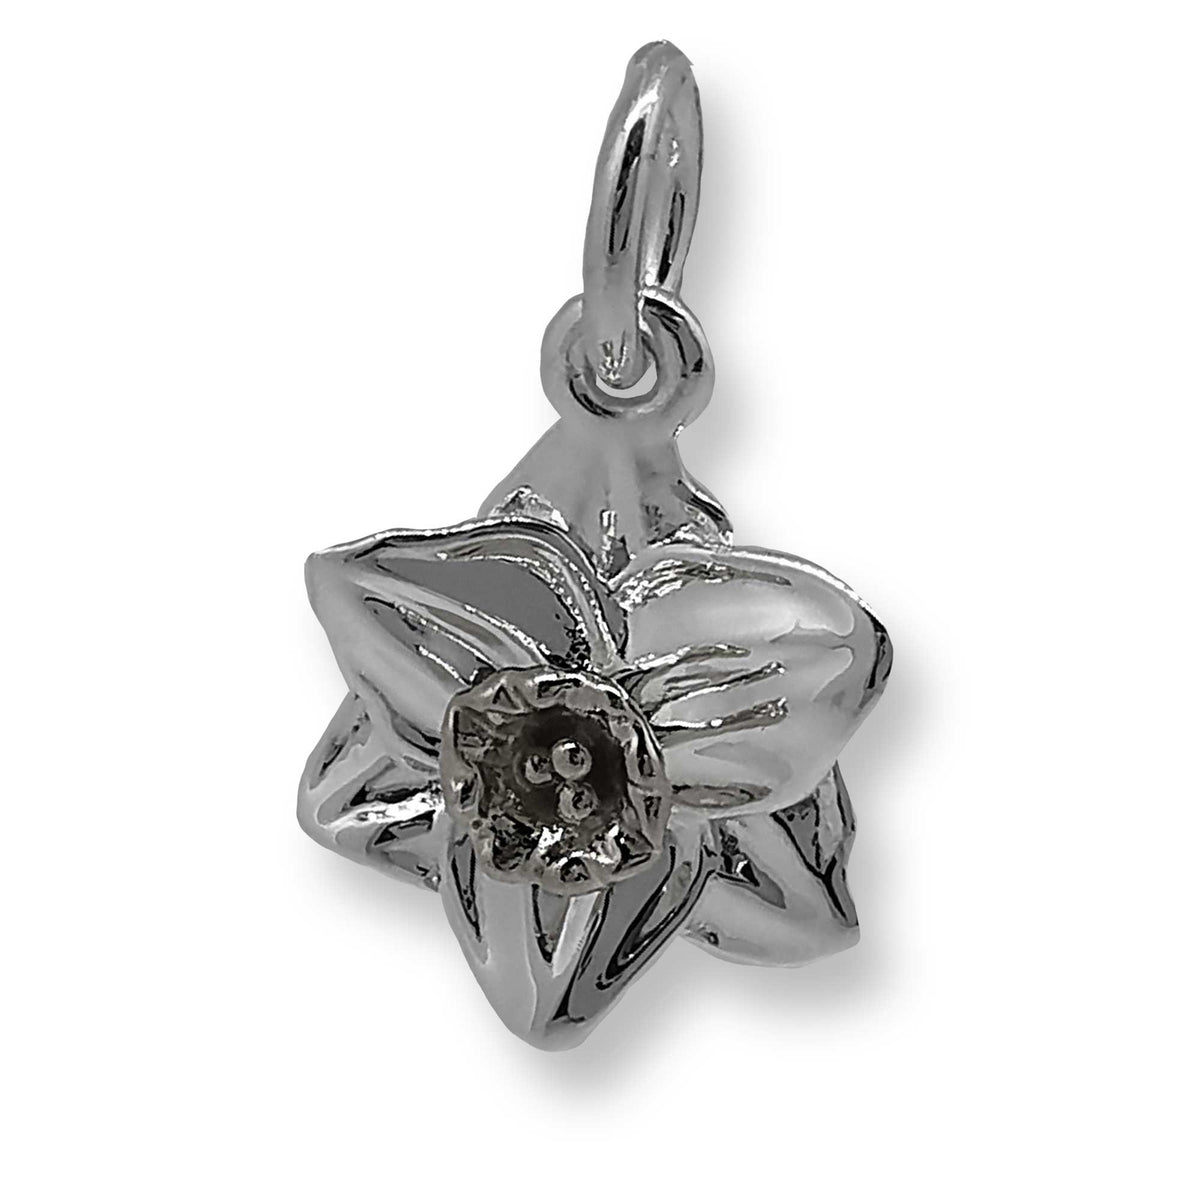 Daffodil flower silver charm scarlett jewellery chelsea flower show